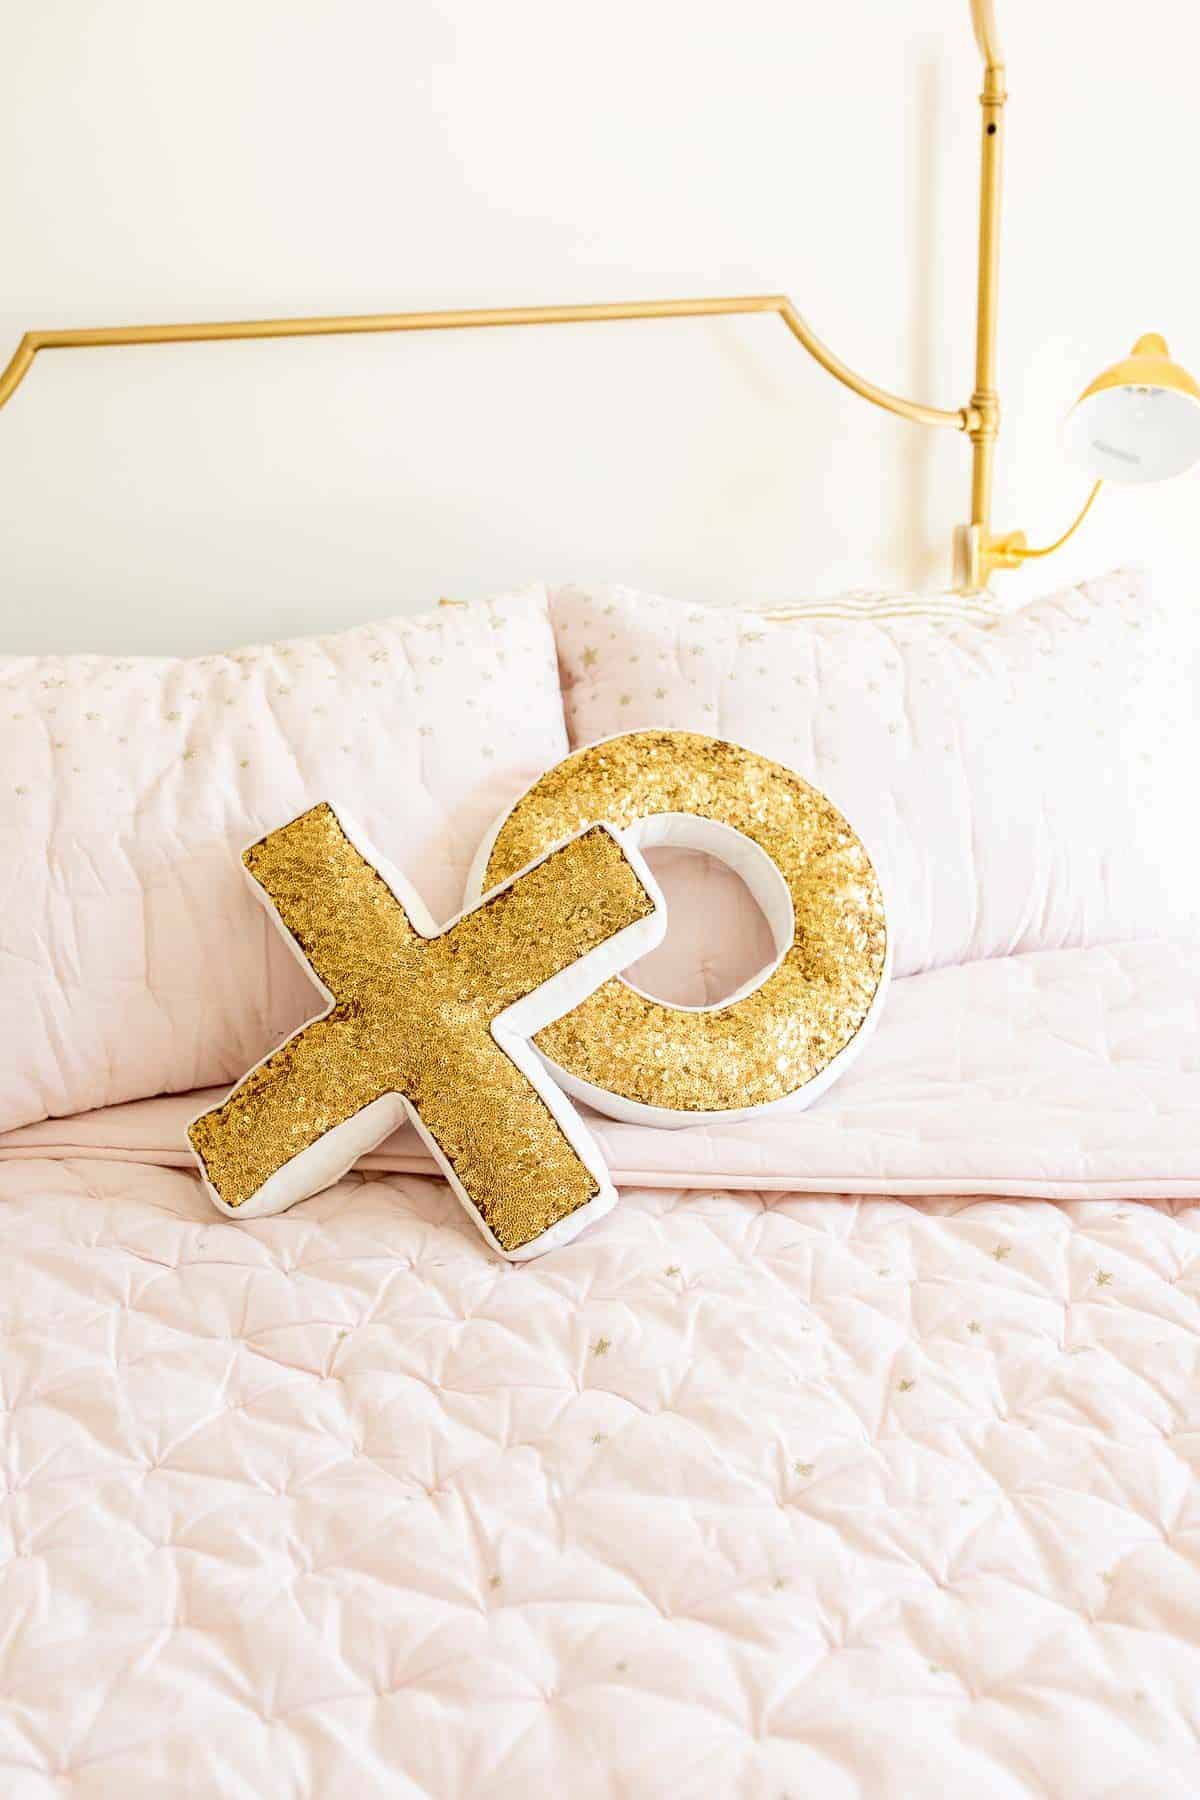 亮片XO金枕头浅粉色床上用品的黄金床。